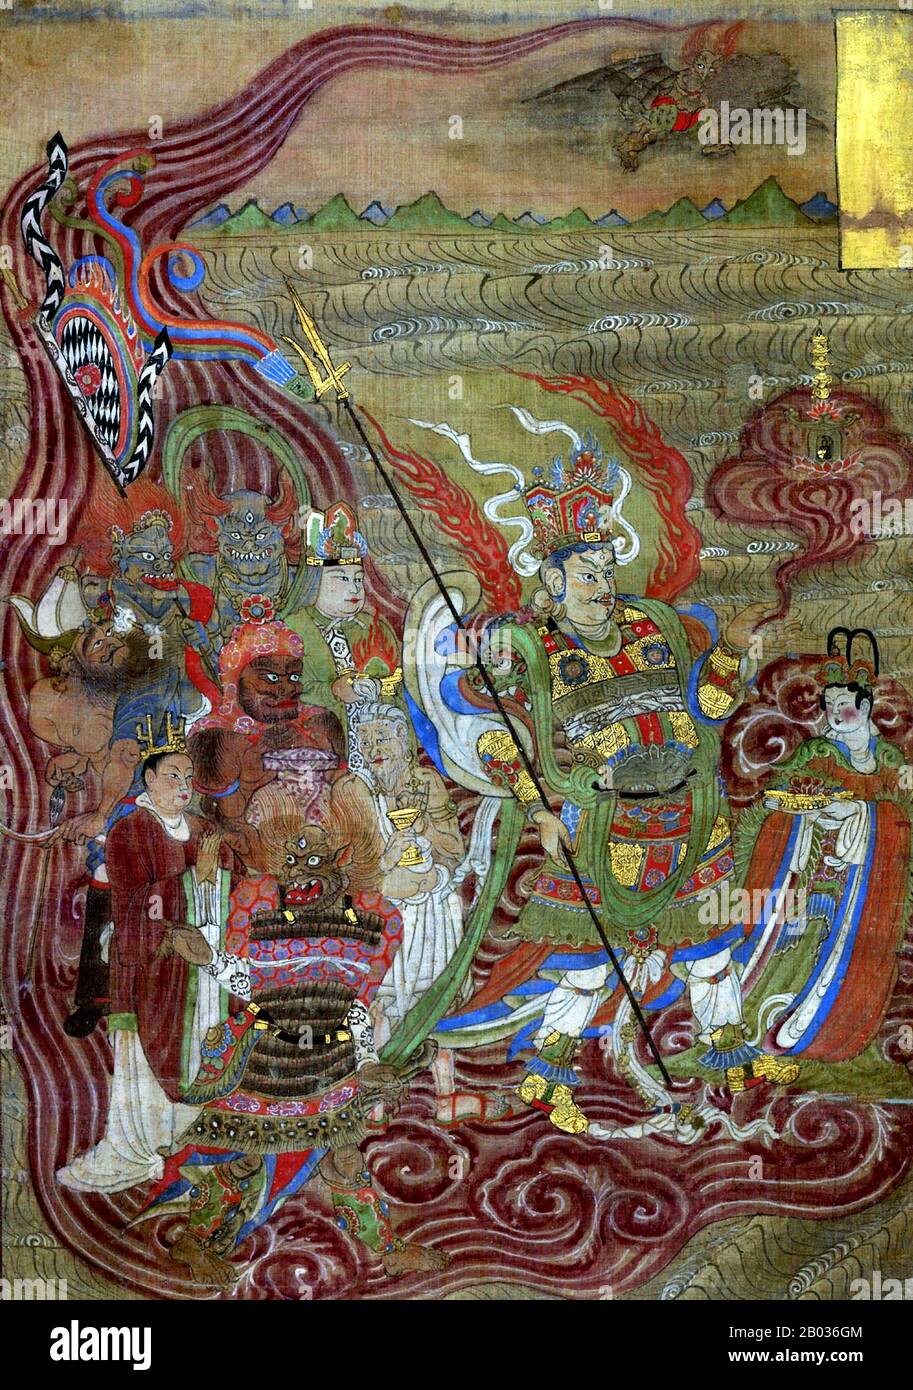 Vaissavana, talvolta farro come Vaishravana o Visravana, è un dio buddista e 'capo' dei Quattro Re Celeste, quattro divinità che proteggono ciascuna una delle direzioni cardinali del mondo. Vaissavana è custode del nord, ed è derivato dalla divinità indù Kubera. Egli fa la sua casa nella metà inferiore del sacro Monte Meru, dove egli signori su tutti gli yaksha (spiriti guardiani) che vi abitano. Vaissavana è il dominatore della pioggia, e quindi è simbolicamente armato di un ombrello o di una pagoda, indossando un'armatura pesante. I colori più associati a lui sono giallo o verde, ecco perché è di Foto Stock